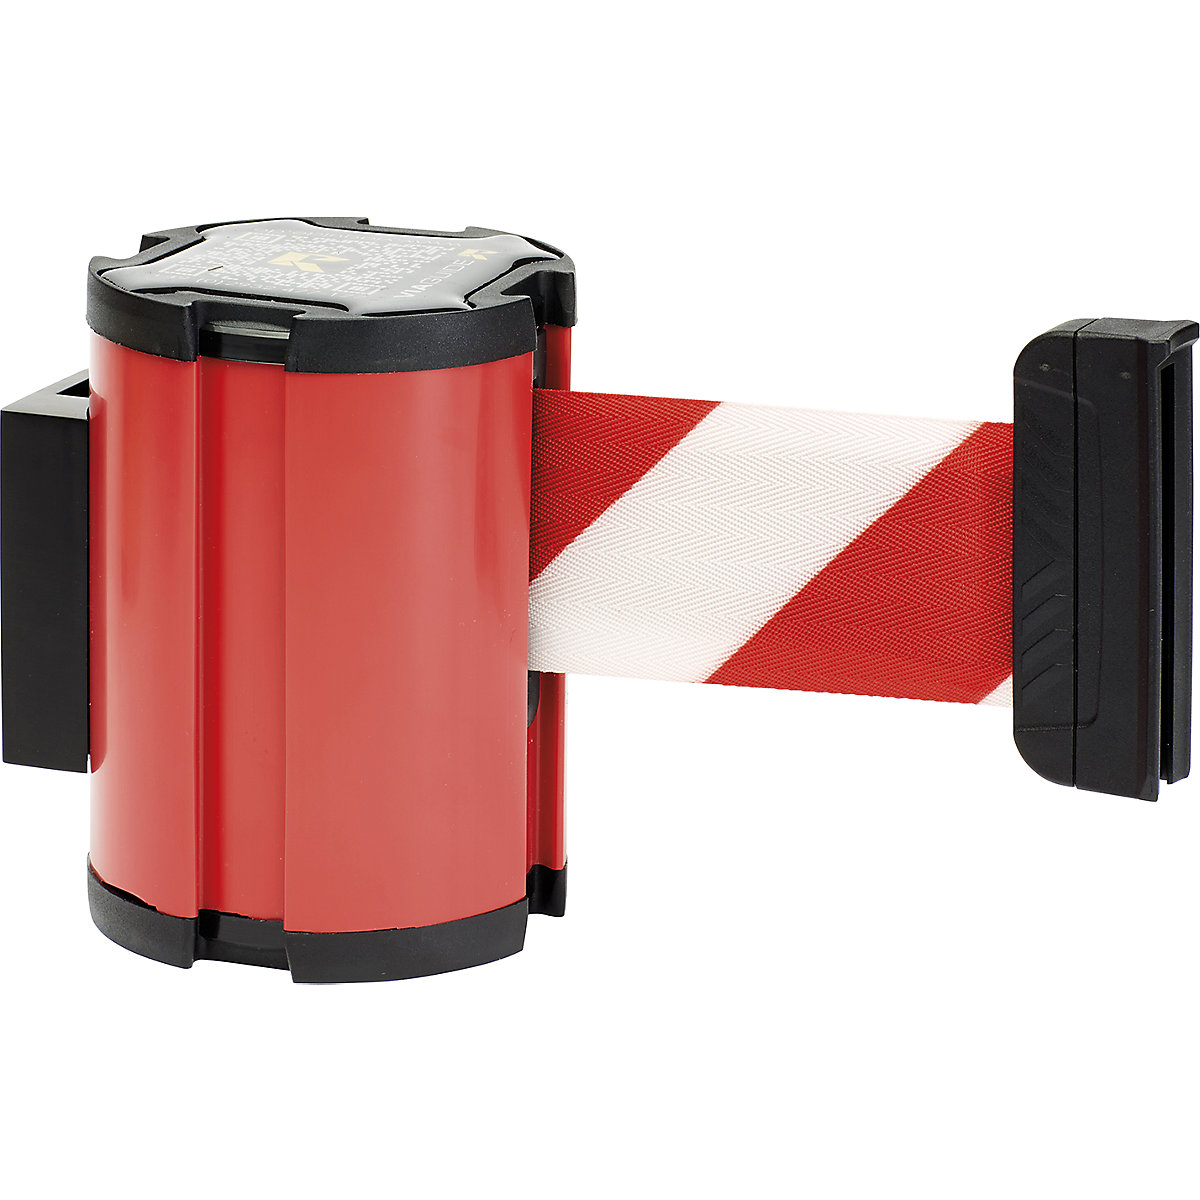 Cassete de cinta, extração máx. da cinta 3000 mm, cassete vermelha, cinta vermelha/branca-3